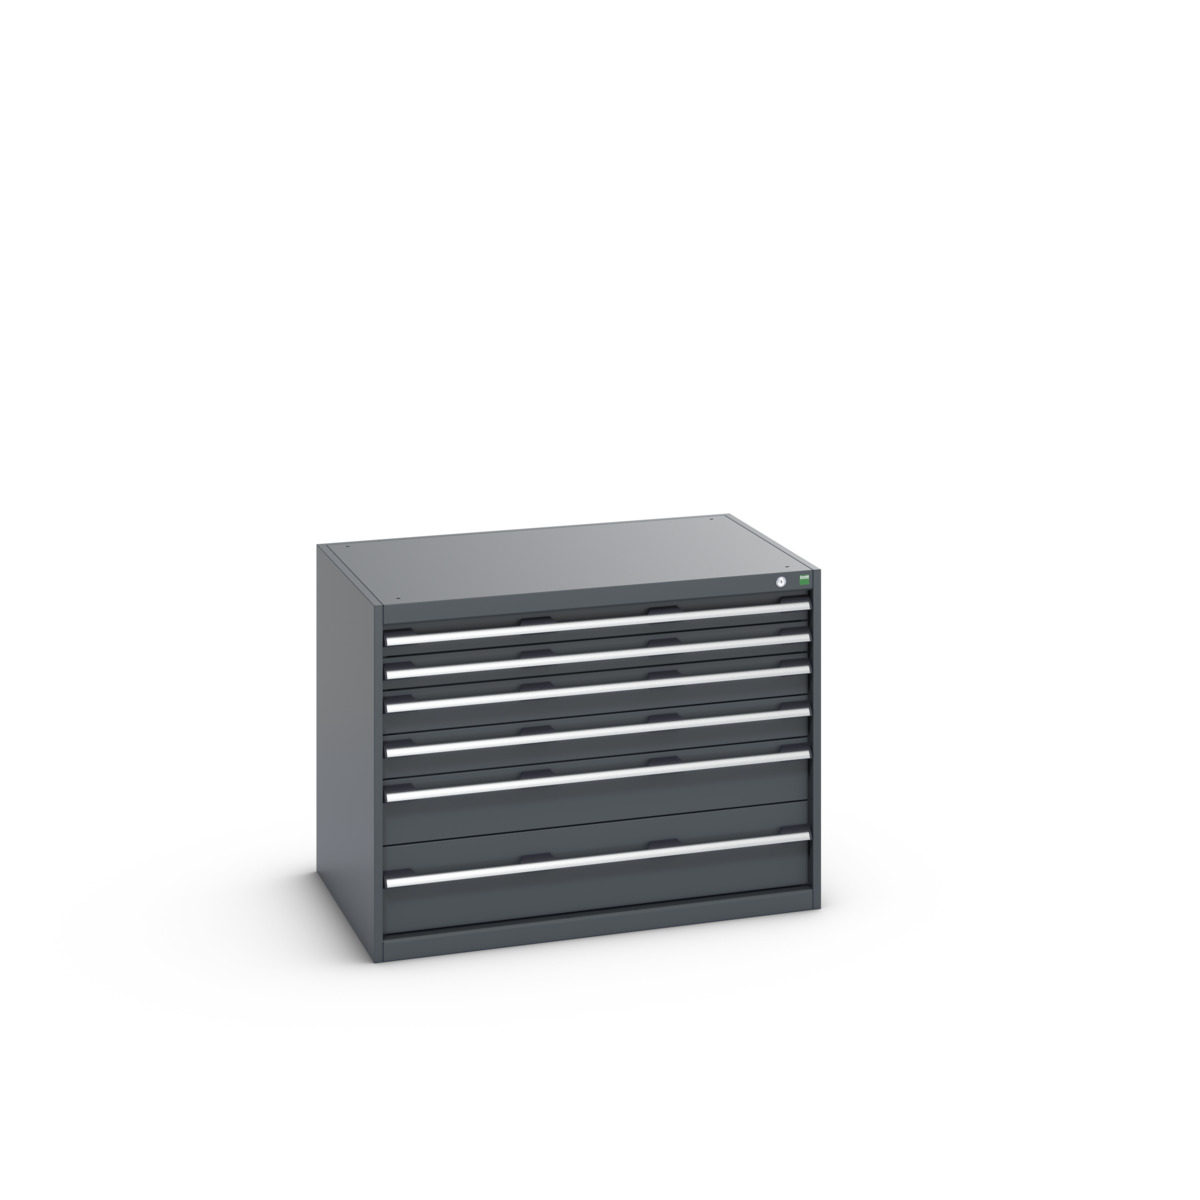 40029086.77V - cubio drawer cabinet